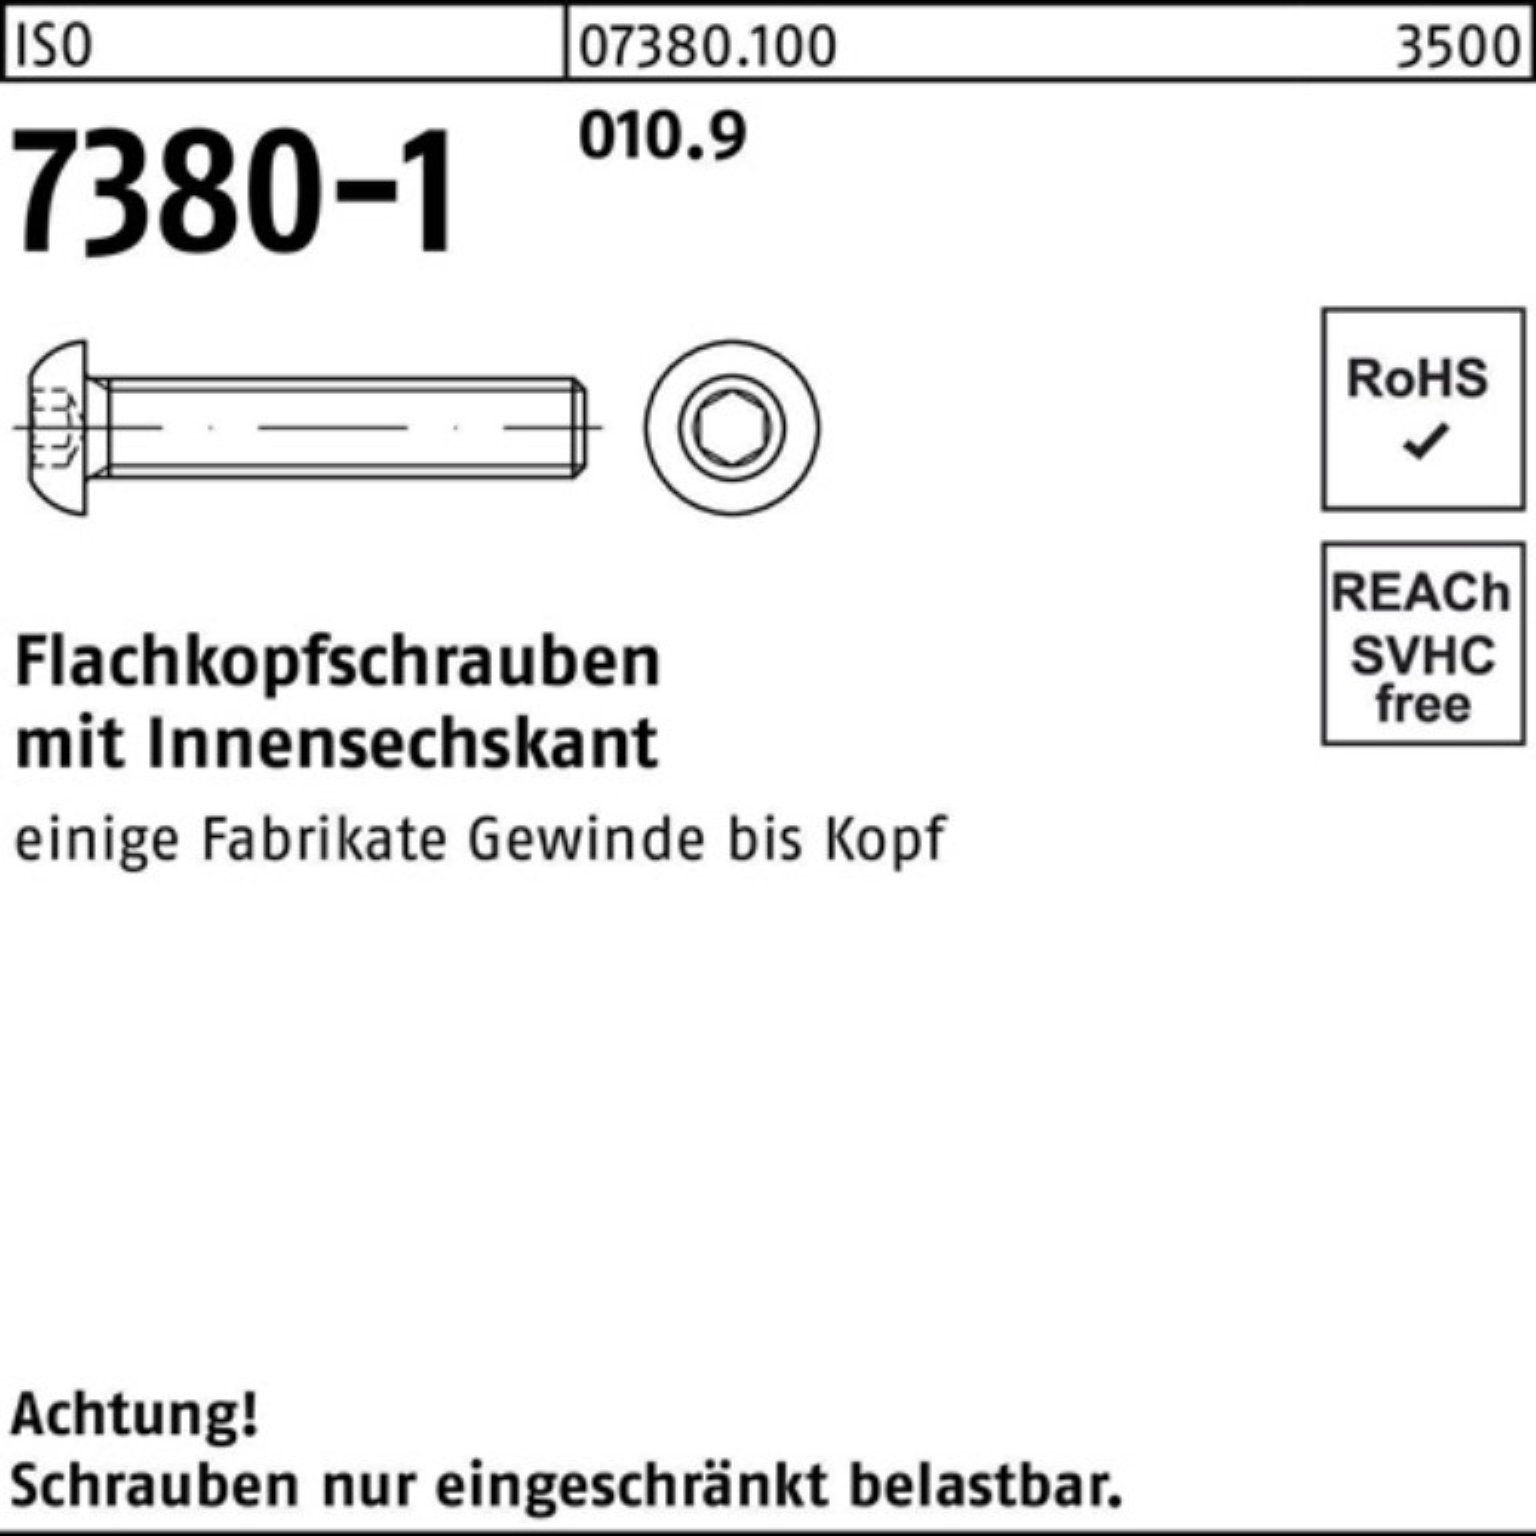 Reyher Schraube 200er Pack Flachkopfschraube 7380-1 St 12 200 010.9 ISO M10x Innen-6kt